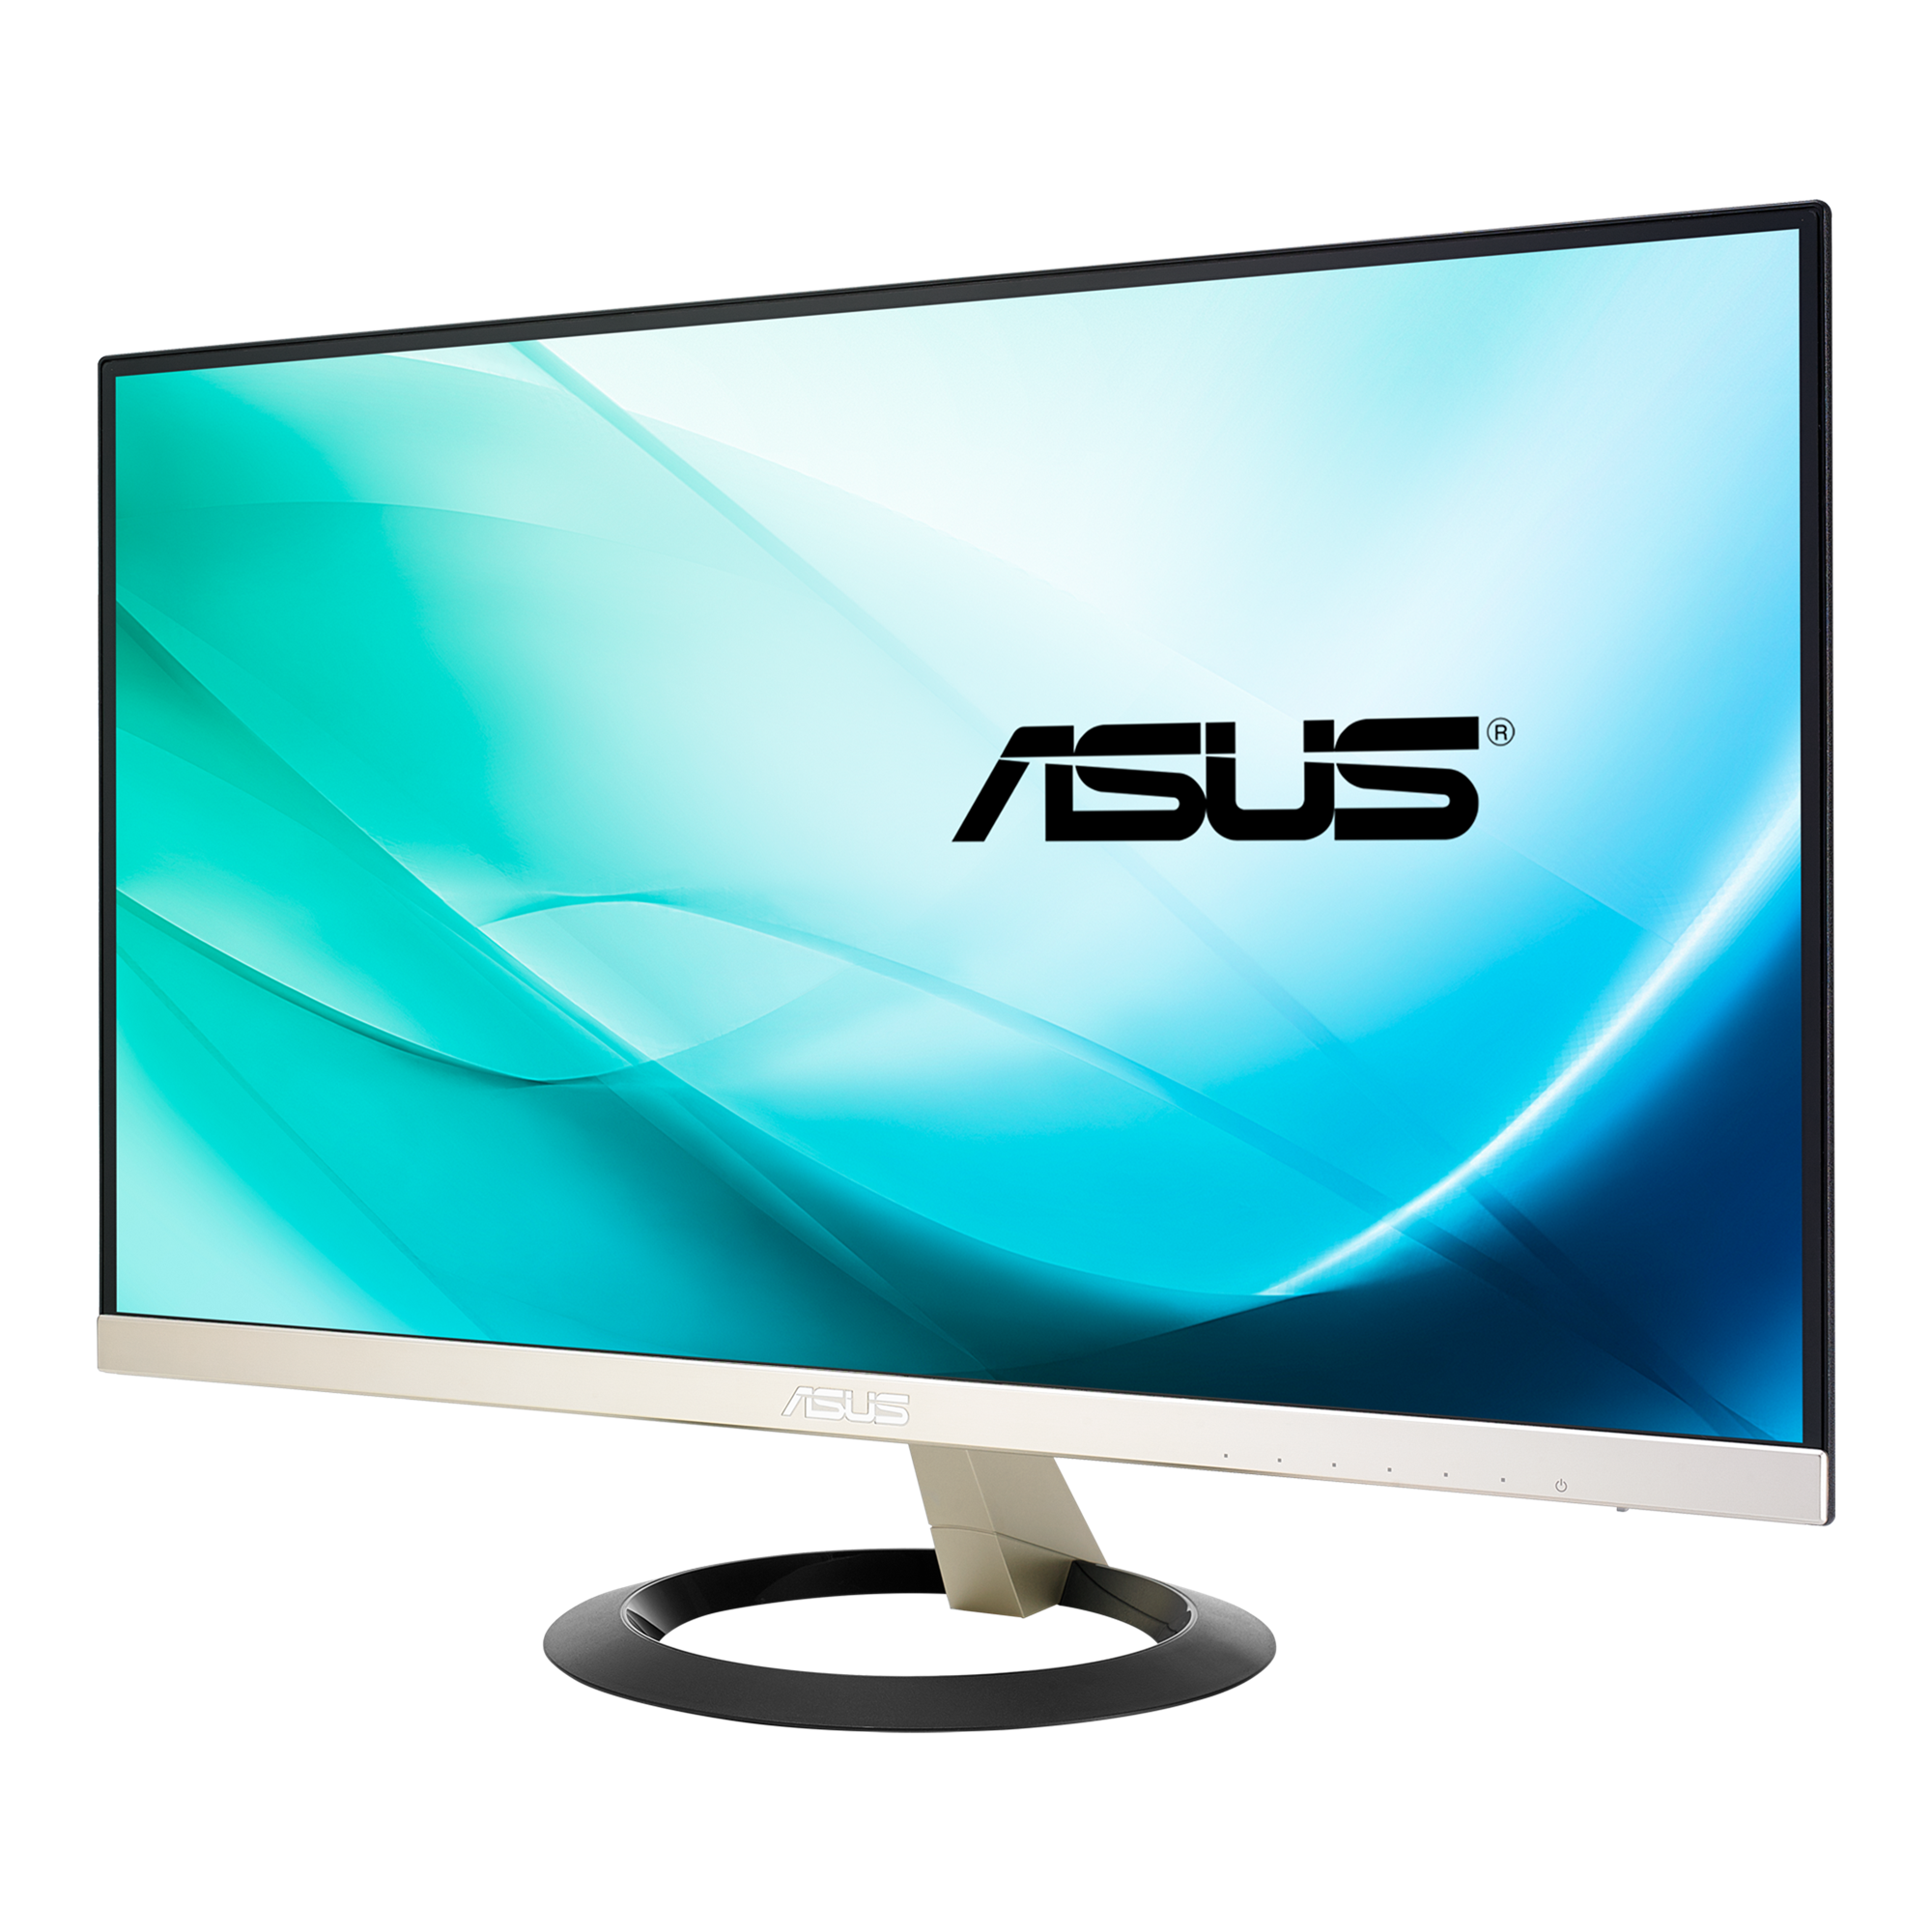 ASUS VZ239H 23インチ ゲーミングモニター液晶ディスプレイ画面サイズ